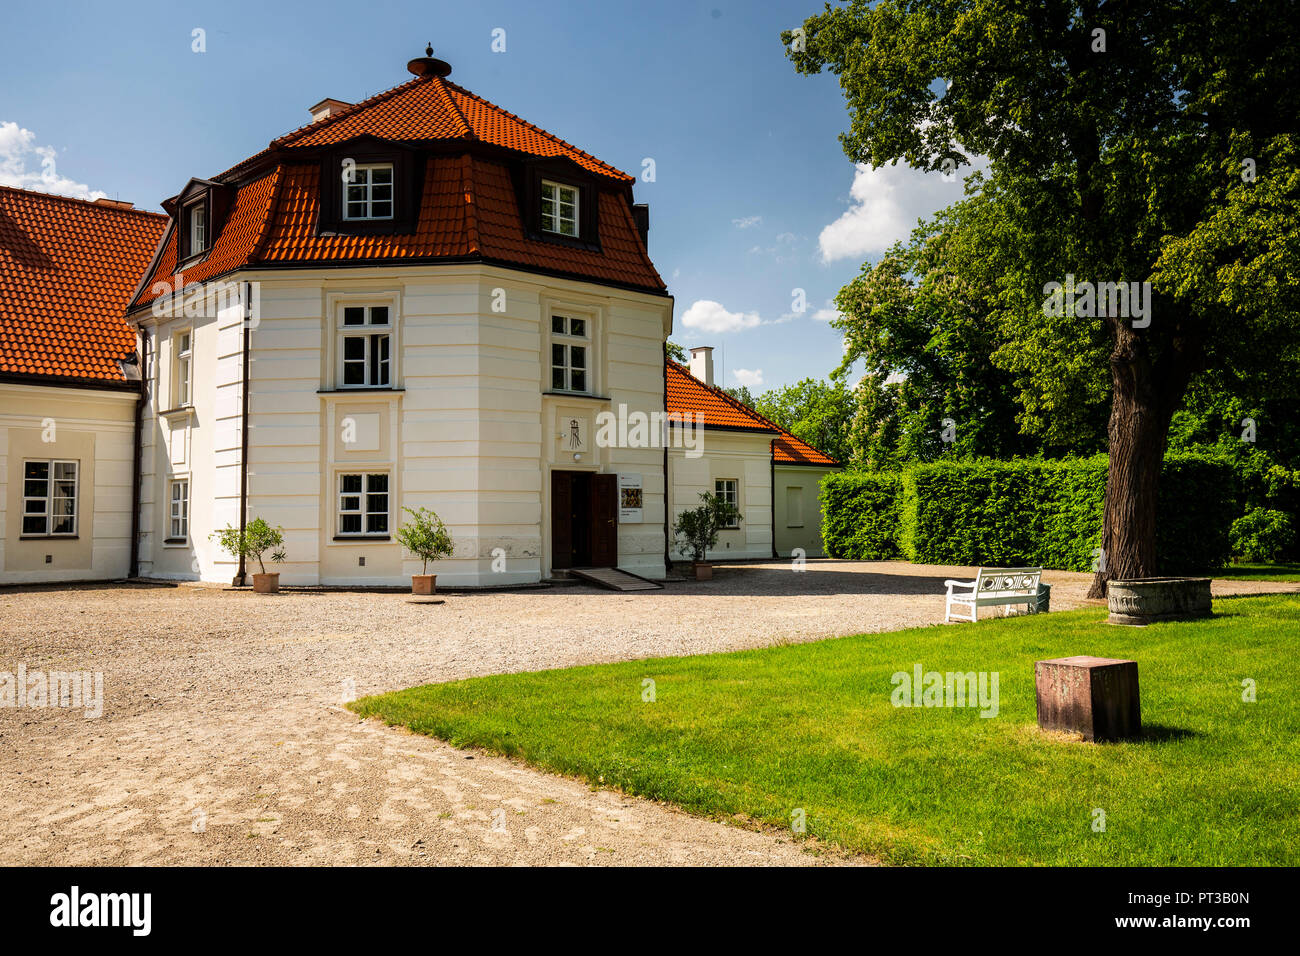 Europe, Poland, Voivodeship Lodz, Nieborow Palace / Palac w Nieborowie Stock Photo